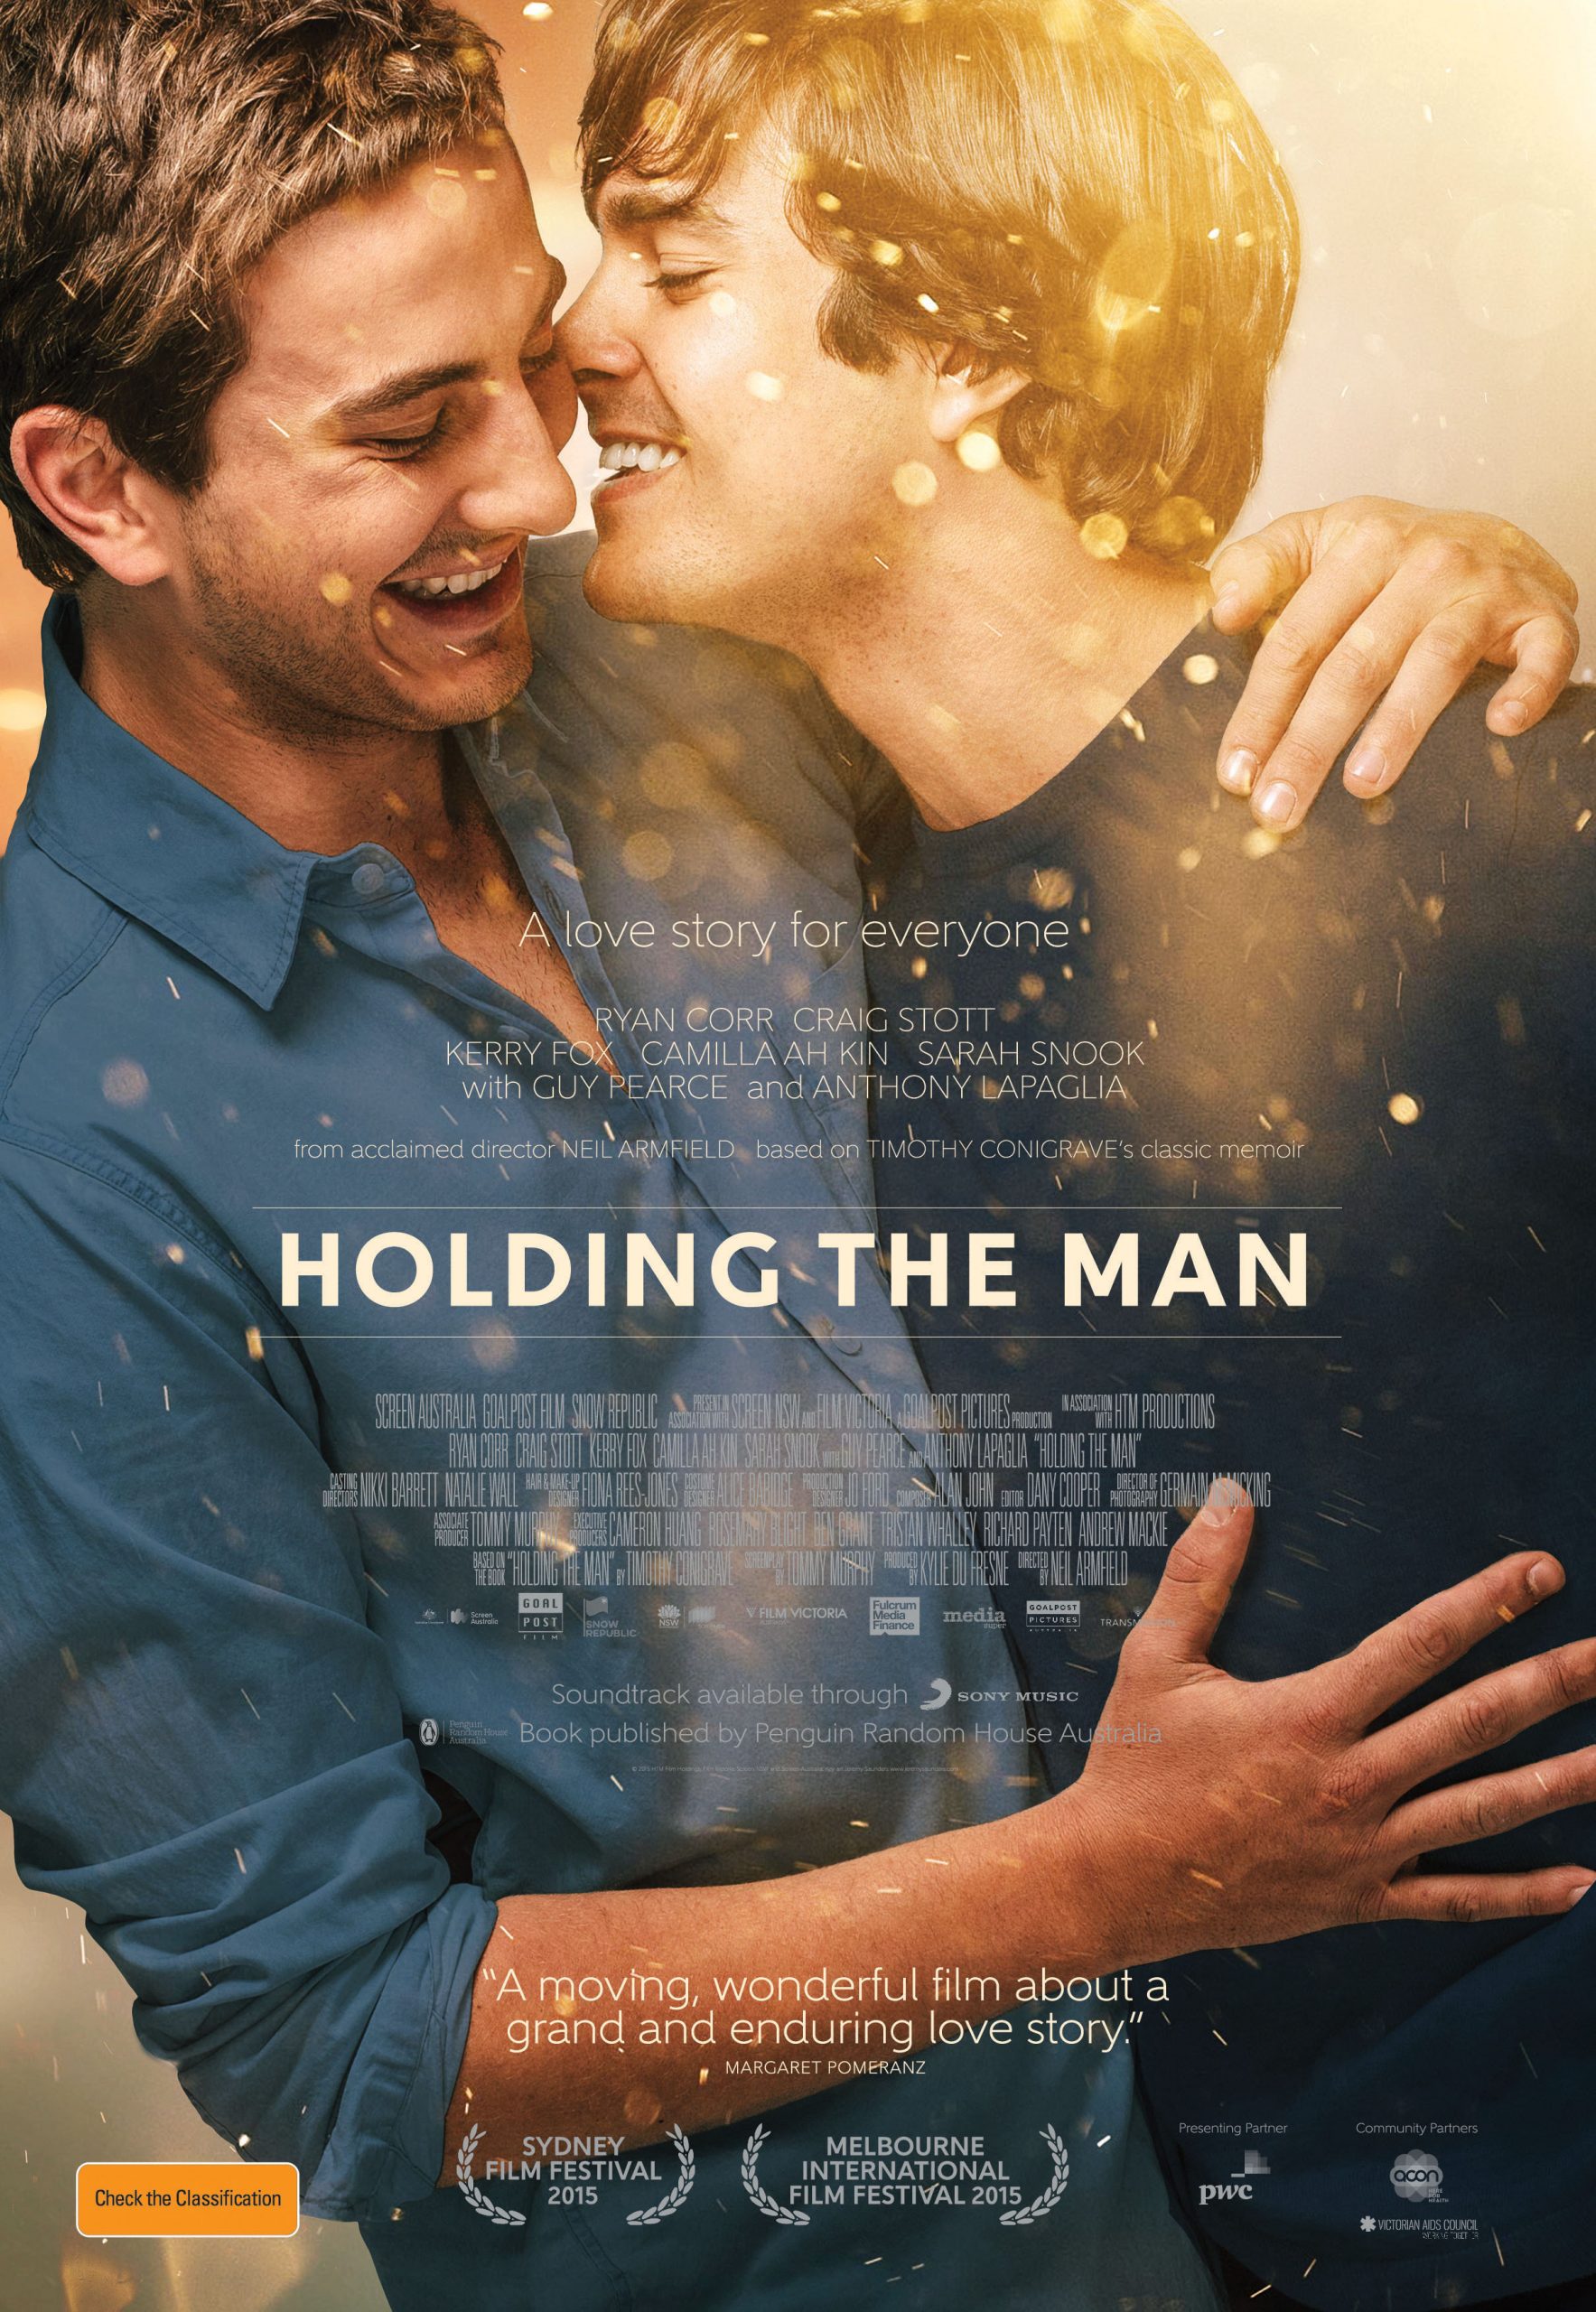 ดูหนังออนไลน์ฟรี Holding the Man (2015) โฮลดิ้ง เดอะ แมน